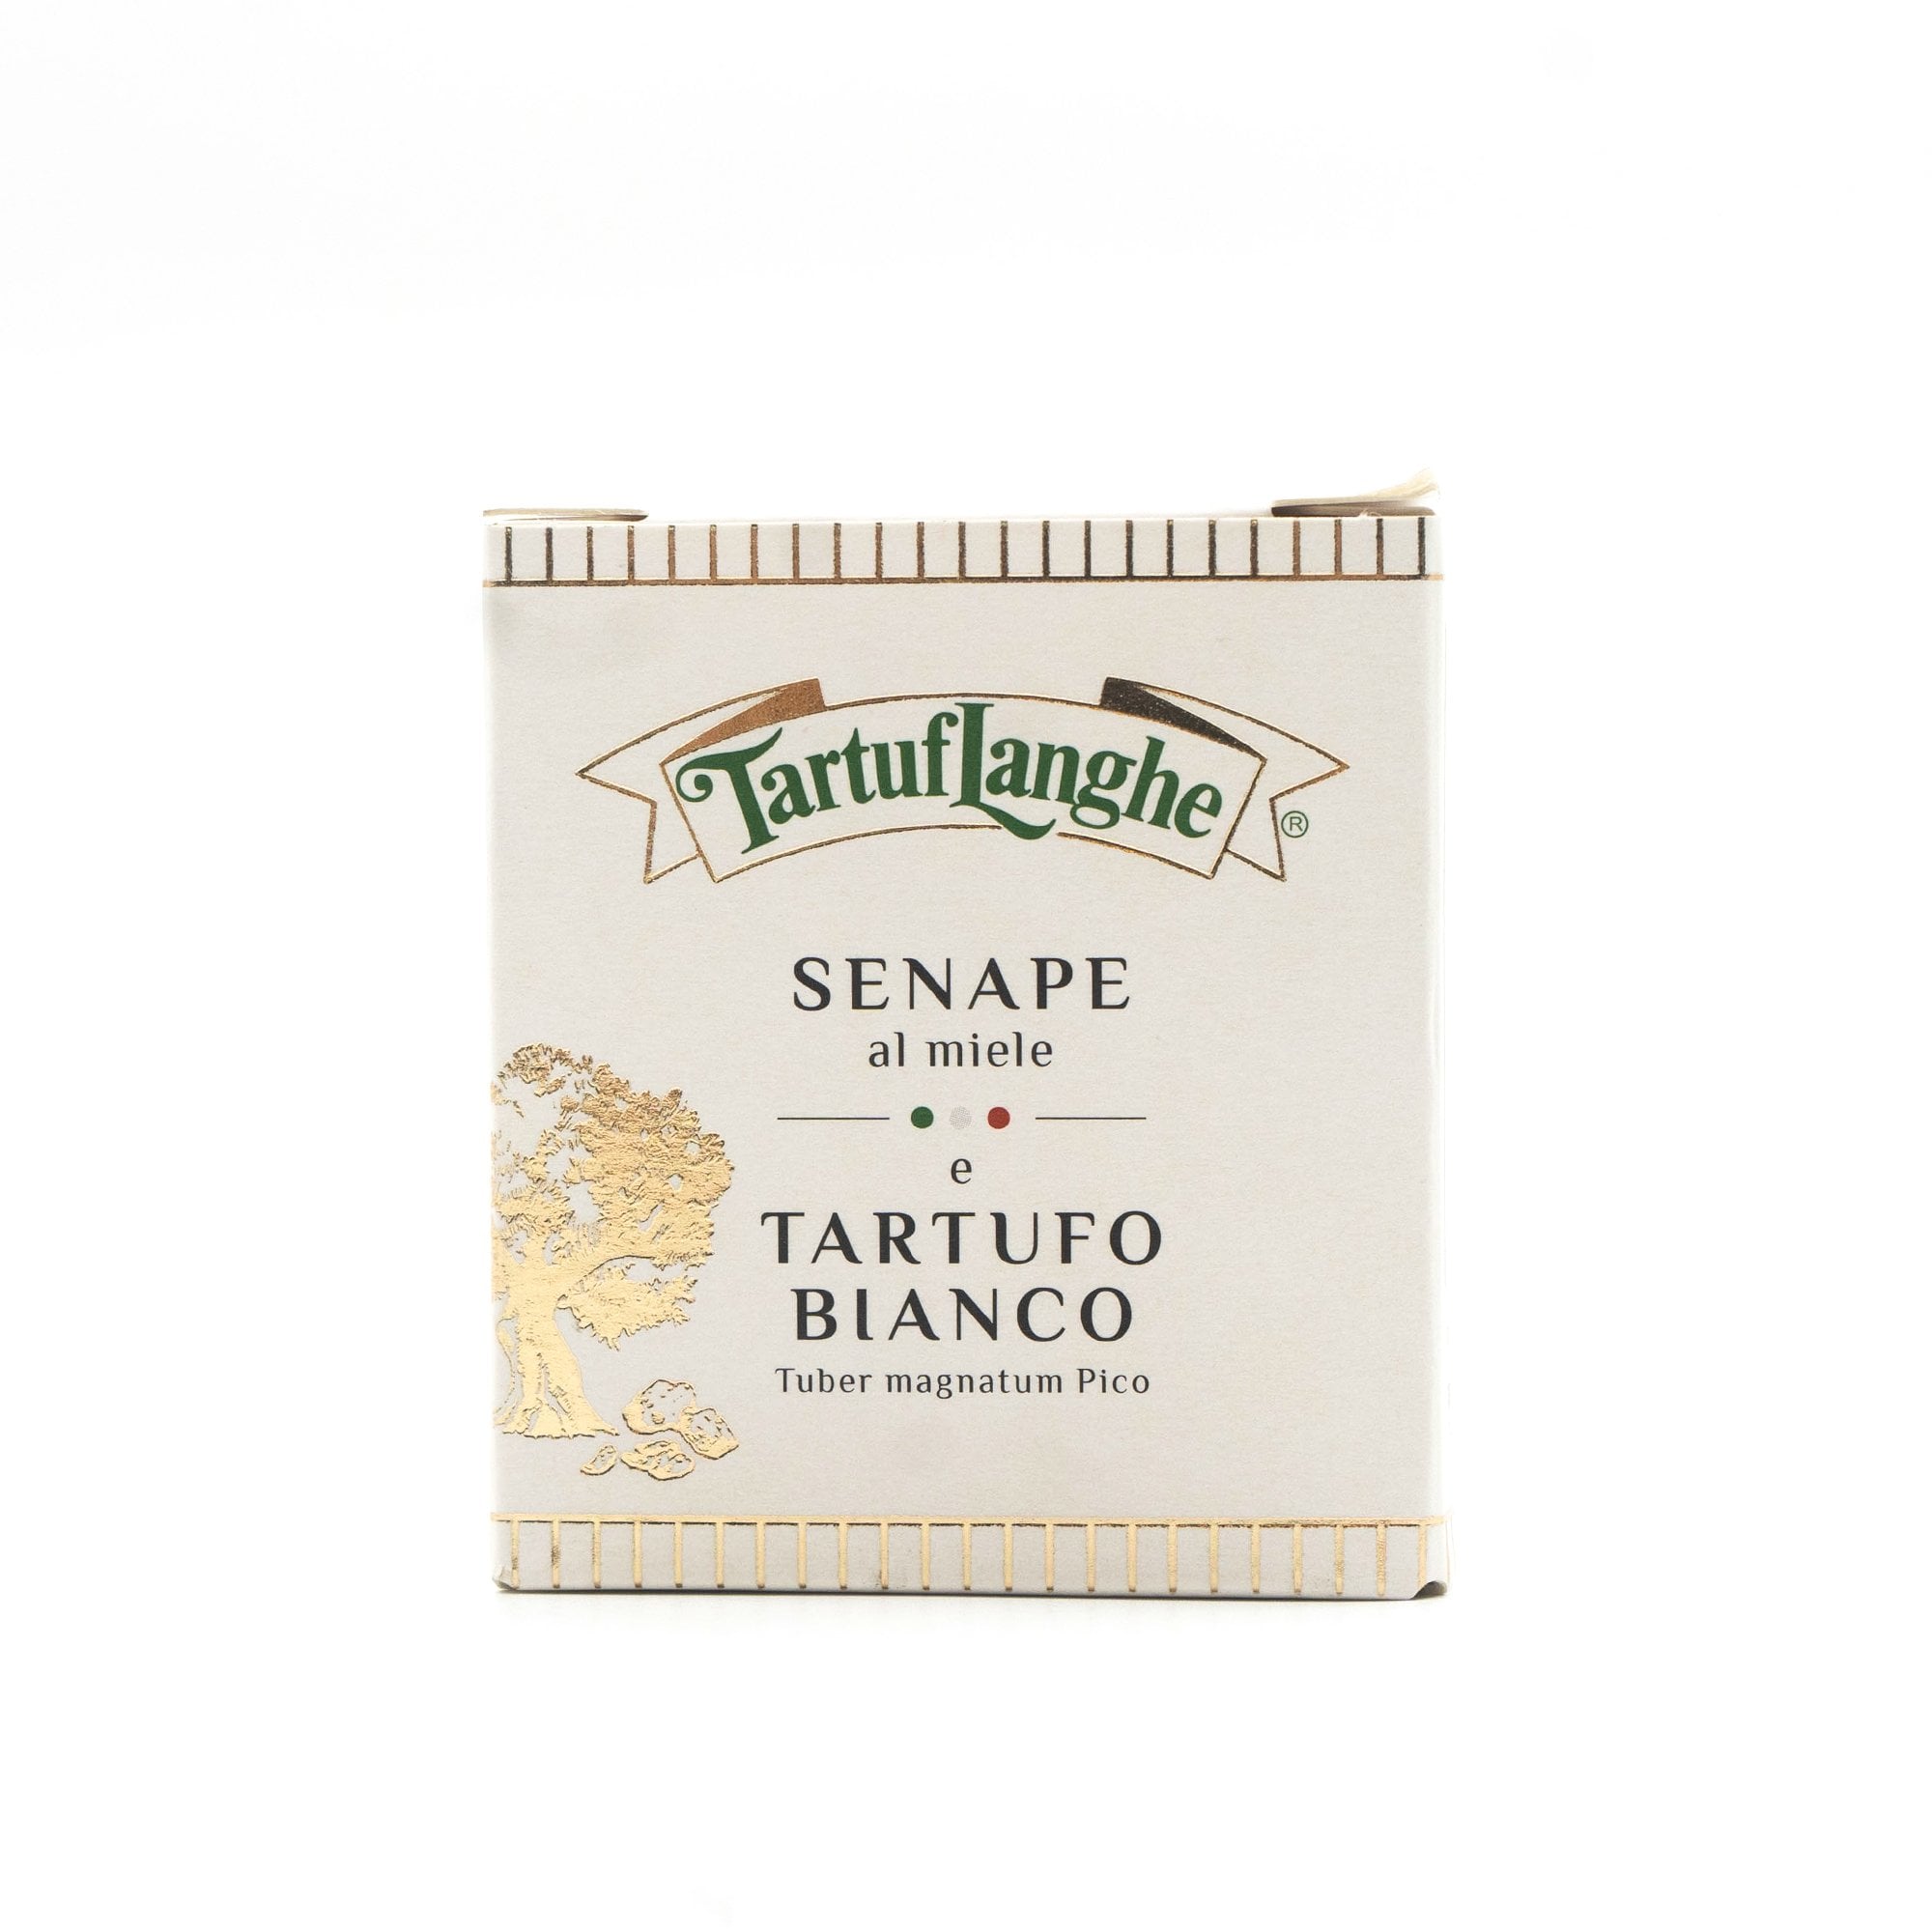 Tartuflanghe, Mustard With Honey And White Truffle, 100 Grams